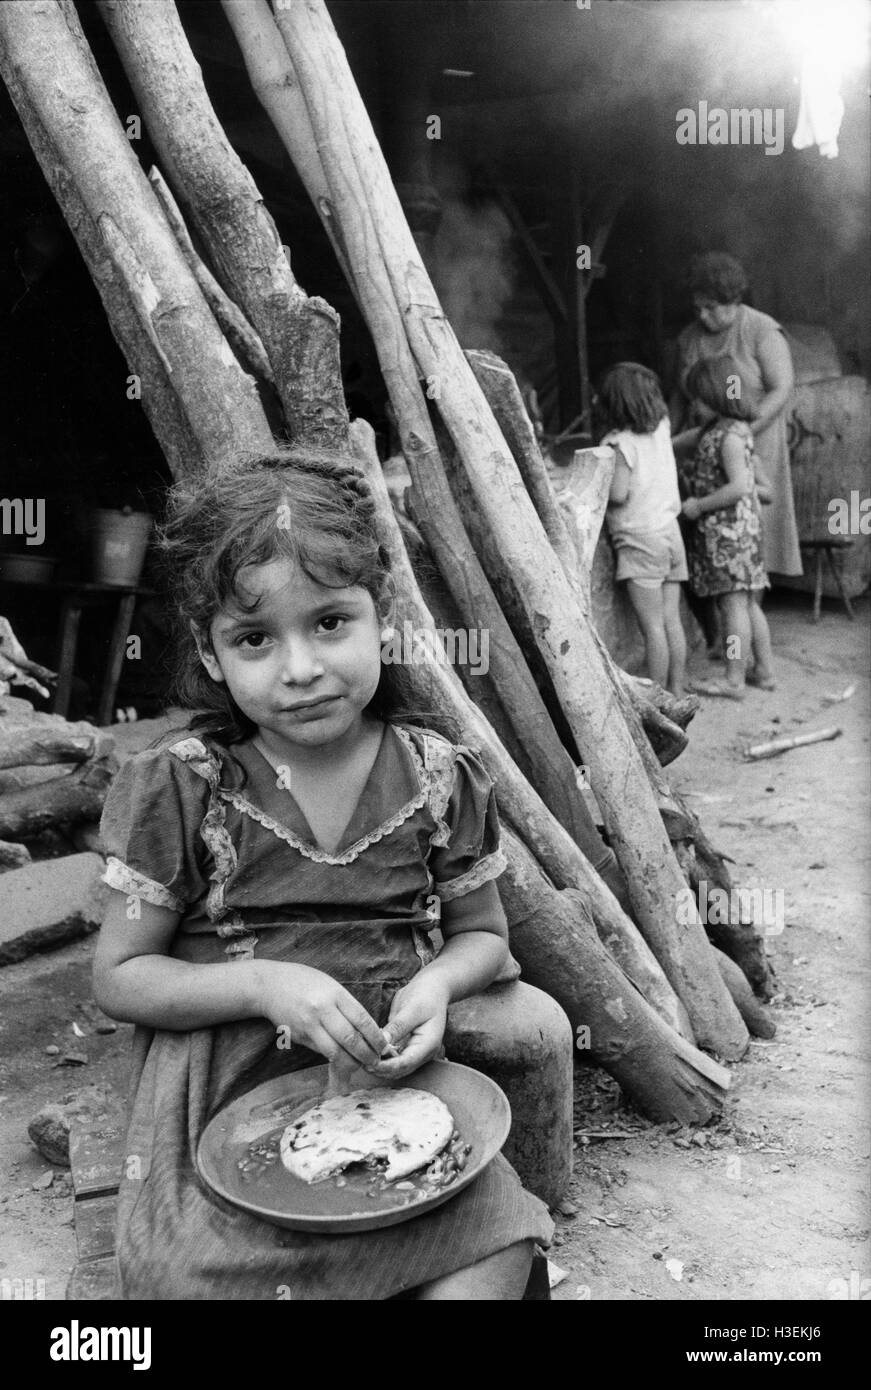 SANTA TECLA, EL SALVADOR, Mai 1986 : famille déplacée, Santa Tecl refuge, San Salvador. Beaucoup de personnes déplacées ont été dans des camps pendant quatre ans. Banque D'Images